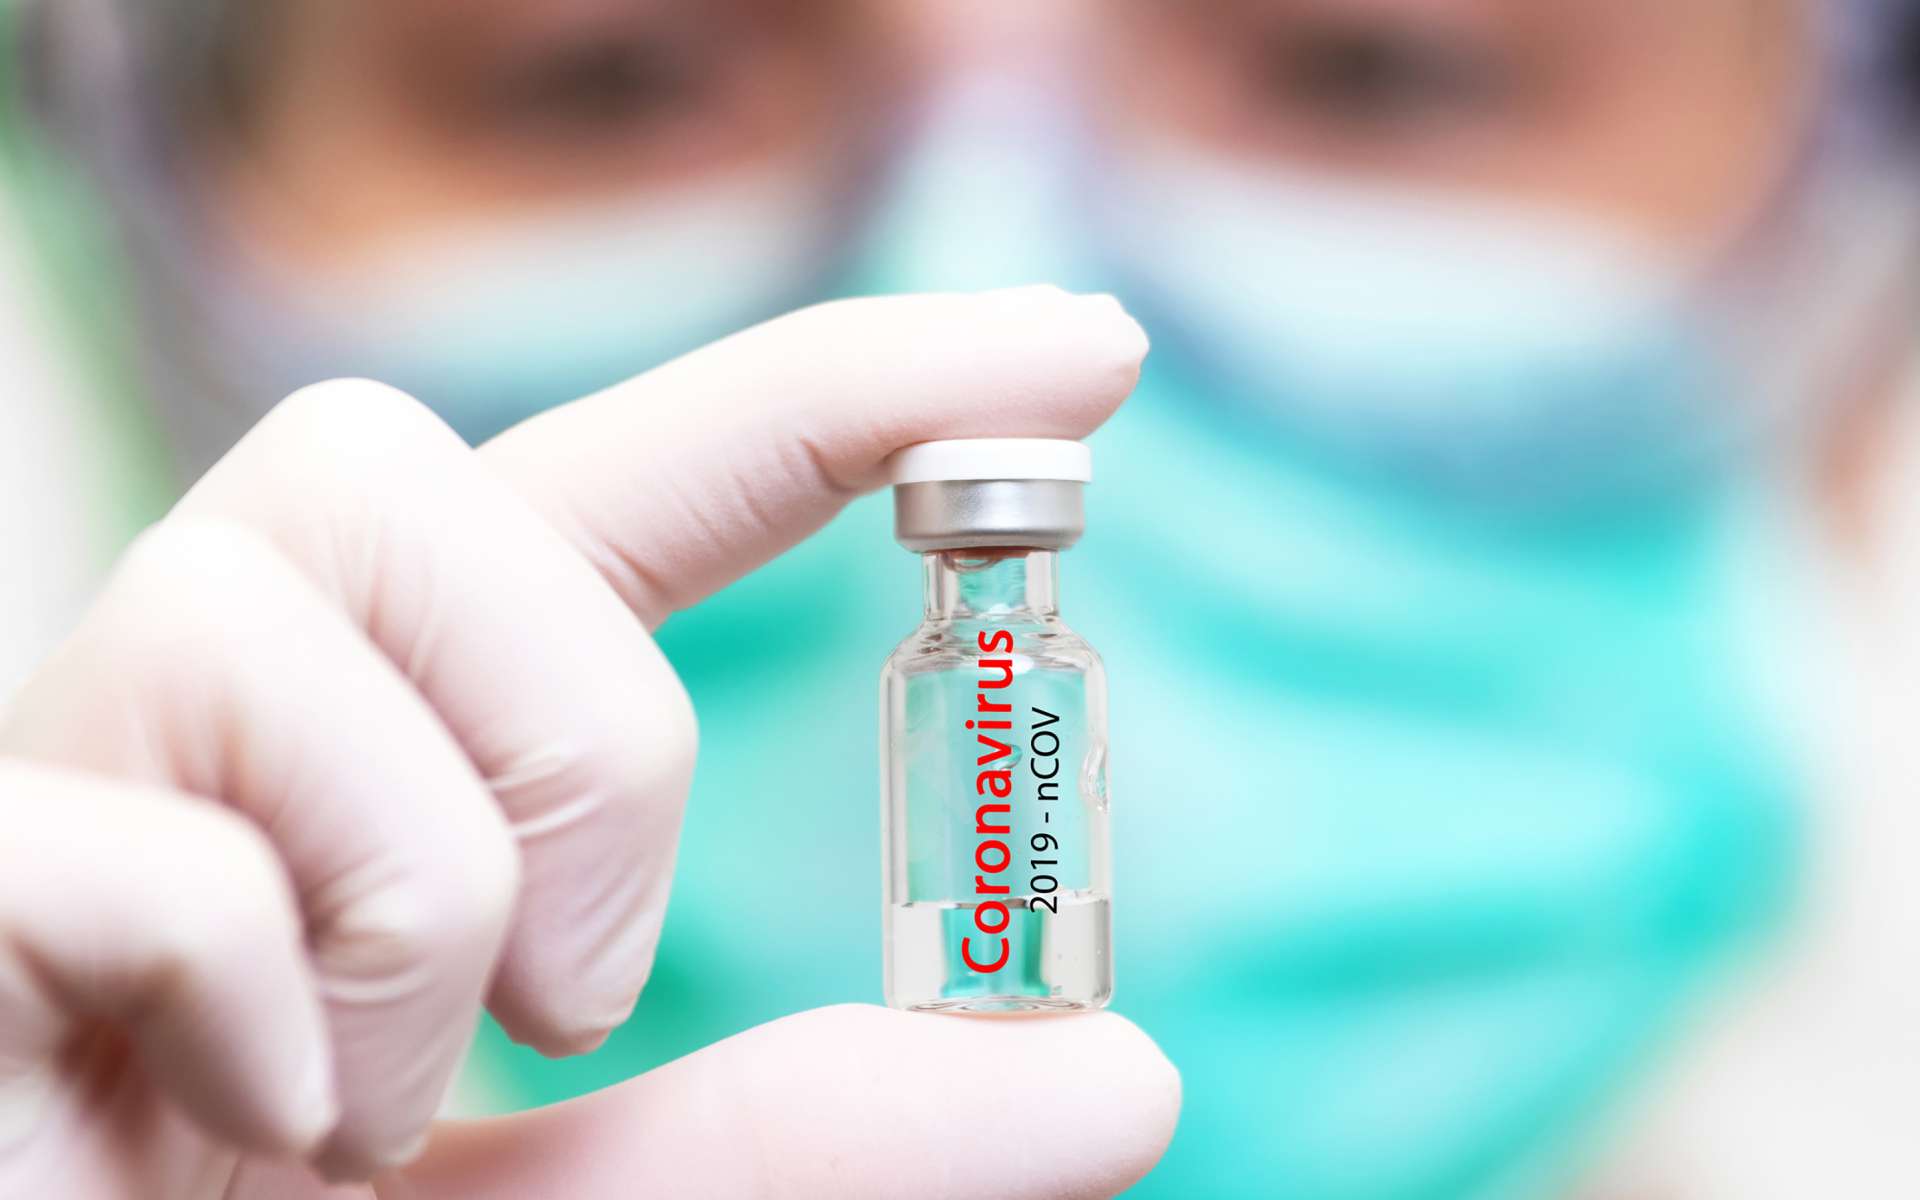 Les résultats intermédiaires de l'essai clinique du vaccin CoronaVac, développé par le laboratoire chinois Sinovac, viennent d'être publiés. © herraez, IStock photo